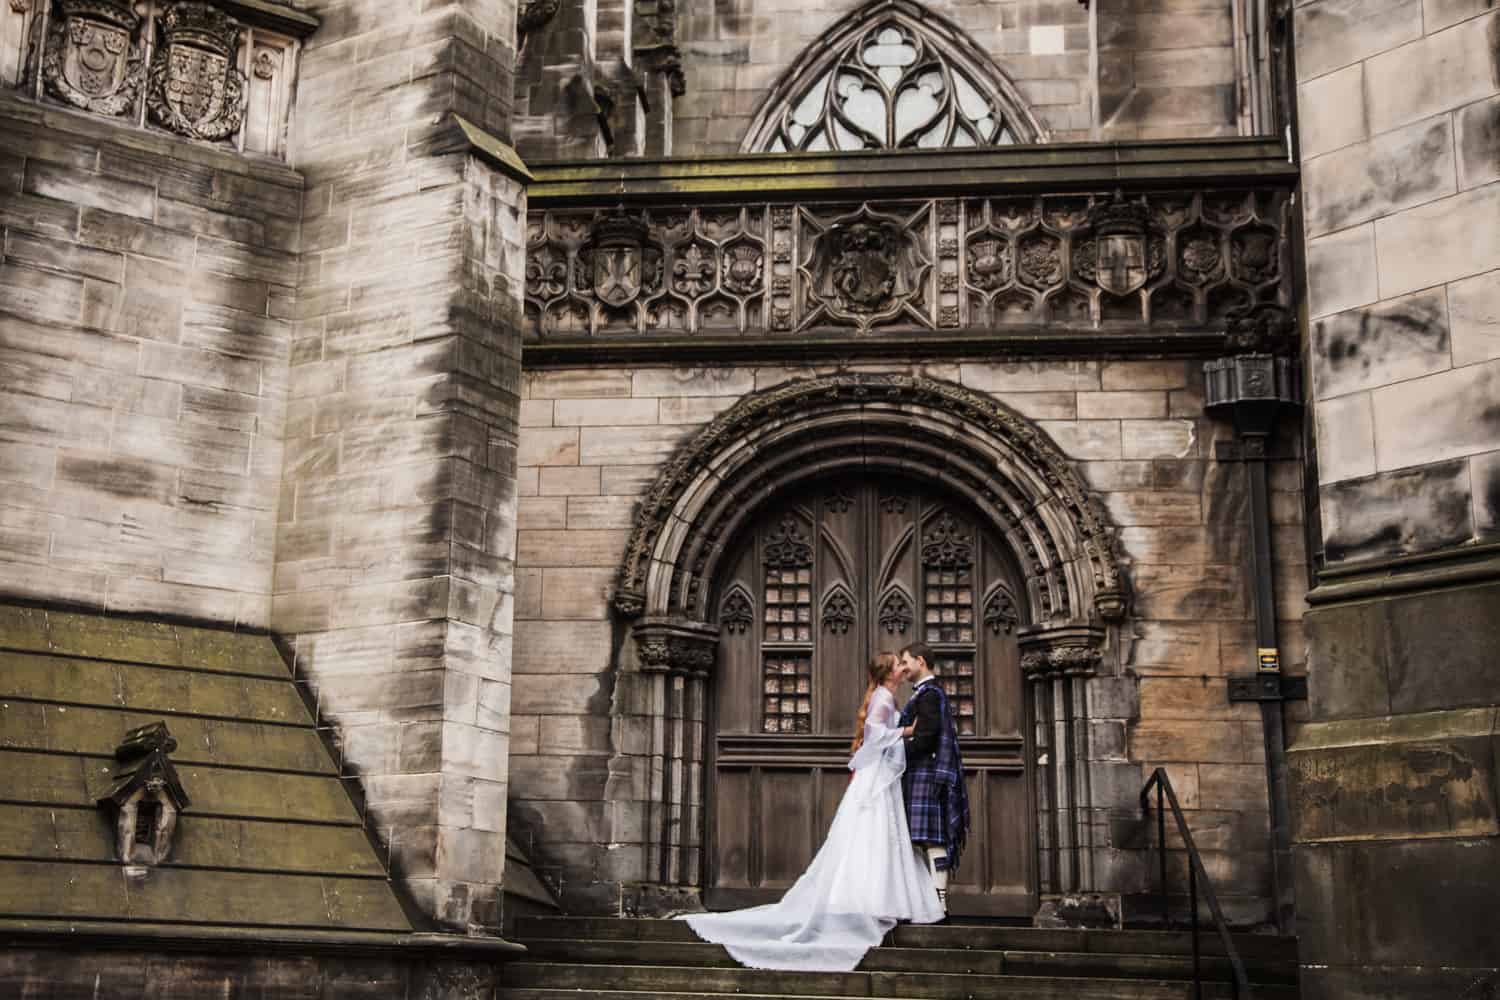 Top romantic places to propose in Edinburgh. 59